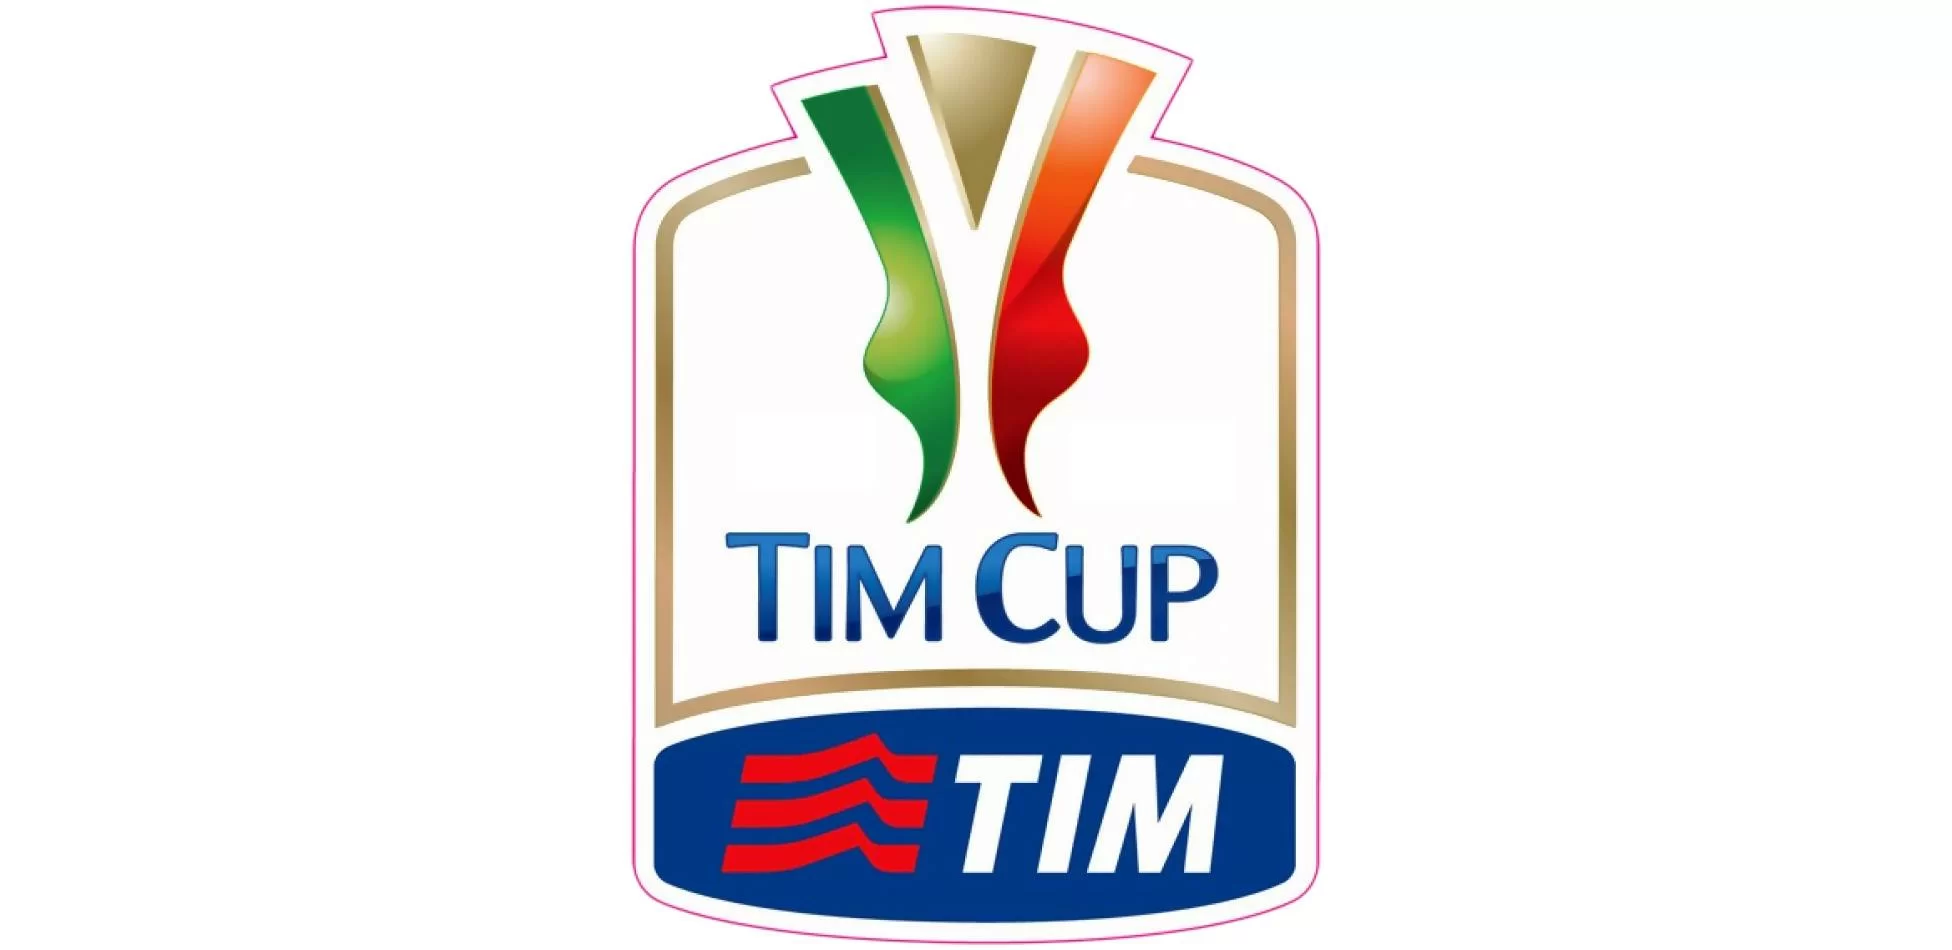 Il Milan ai sedicesimi di Coppa Italia, precedenti e curiosità